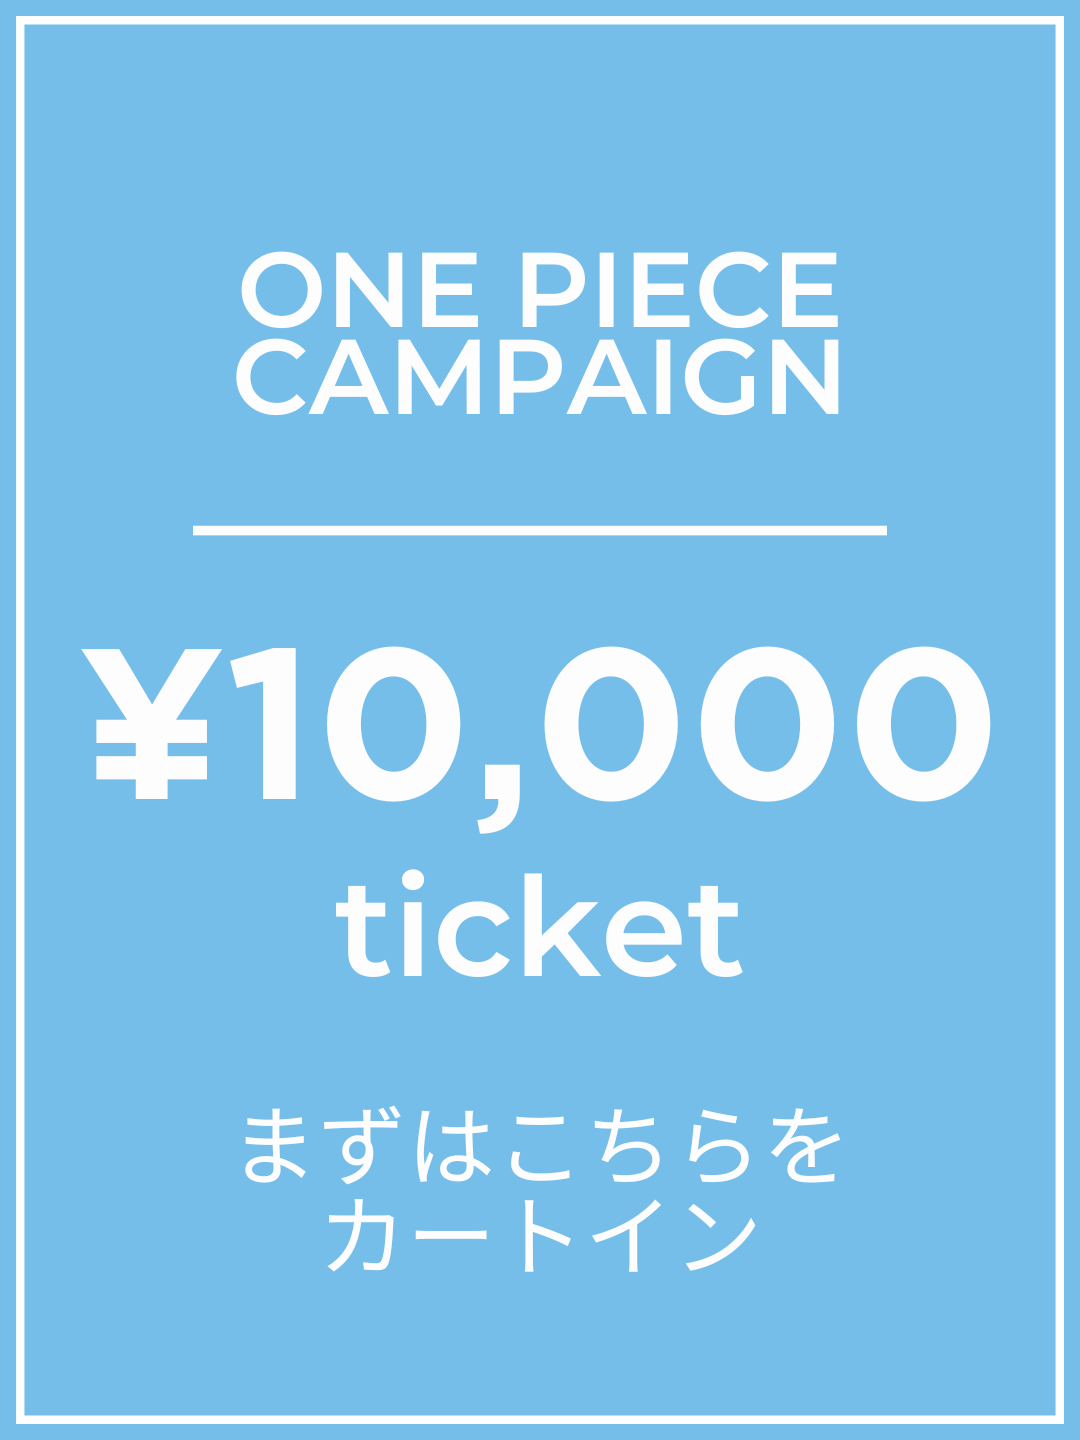 【1番初めにこちらをカートイン】¥10,000チケット